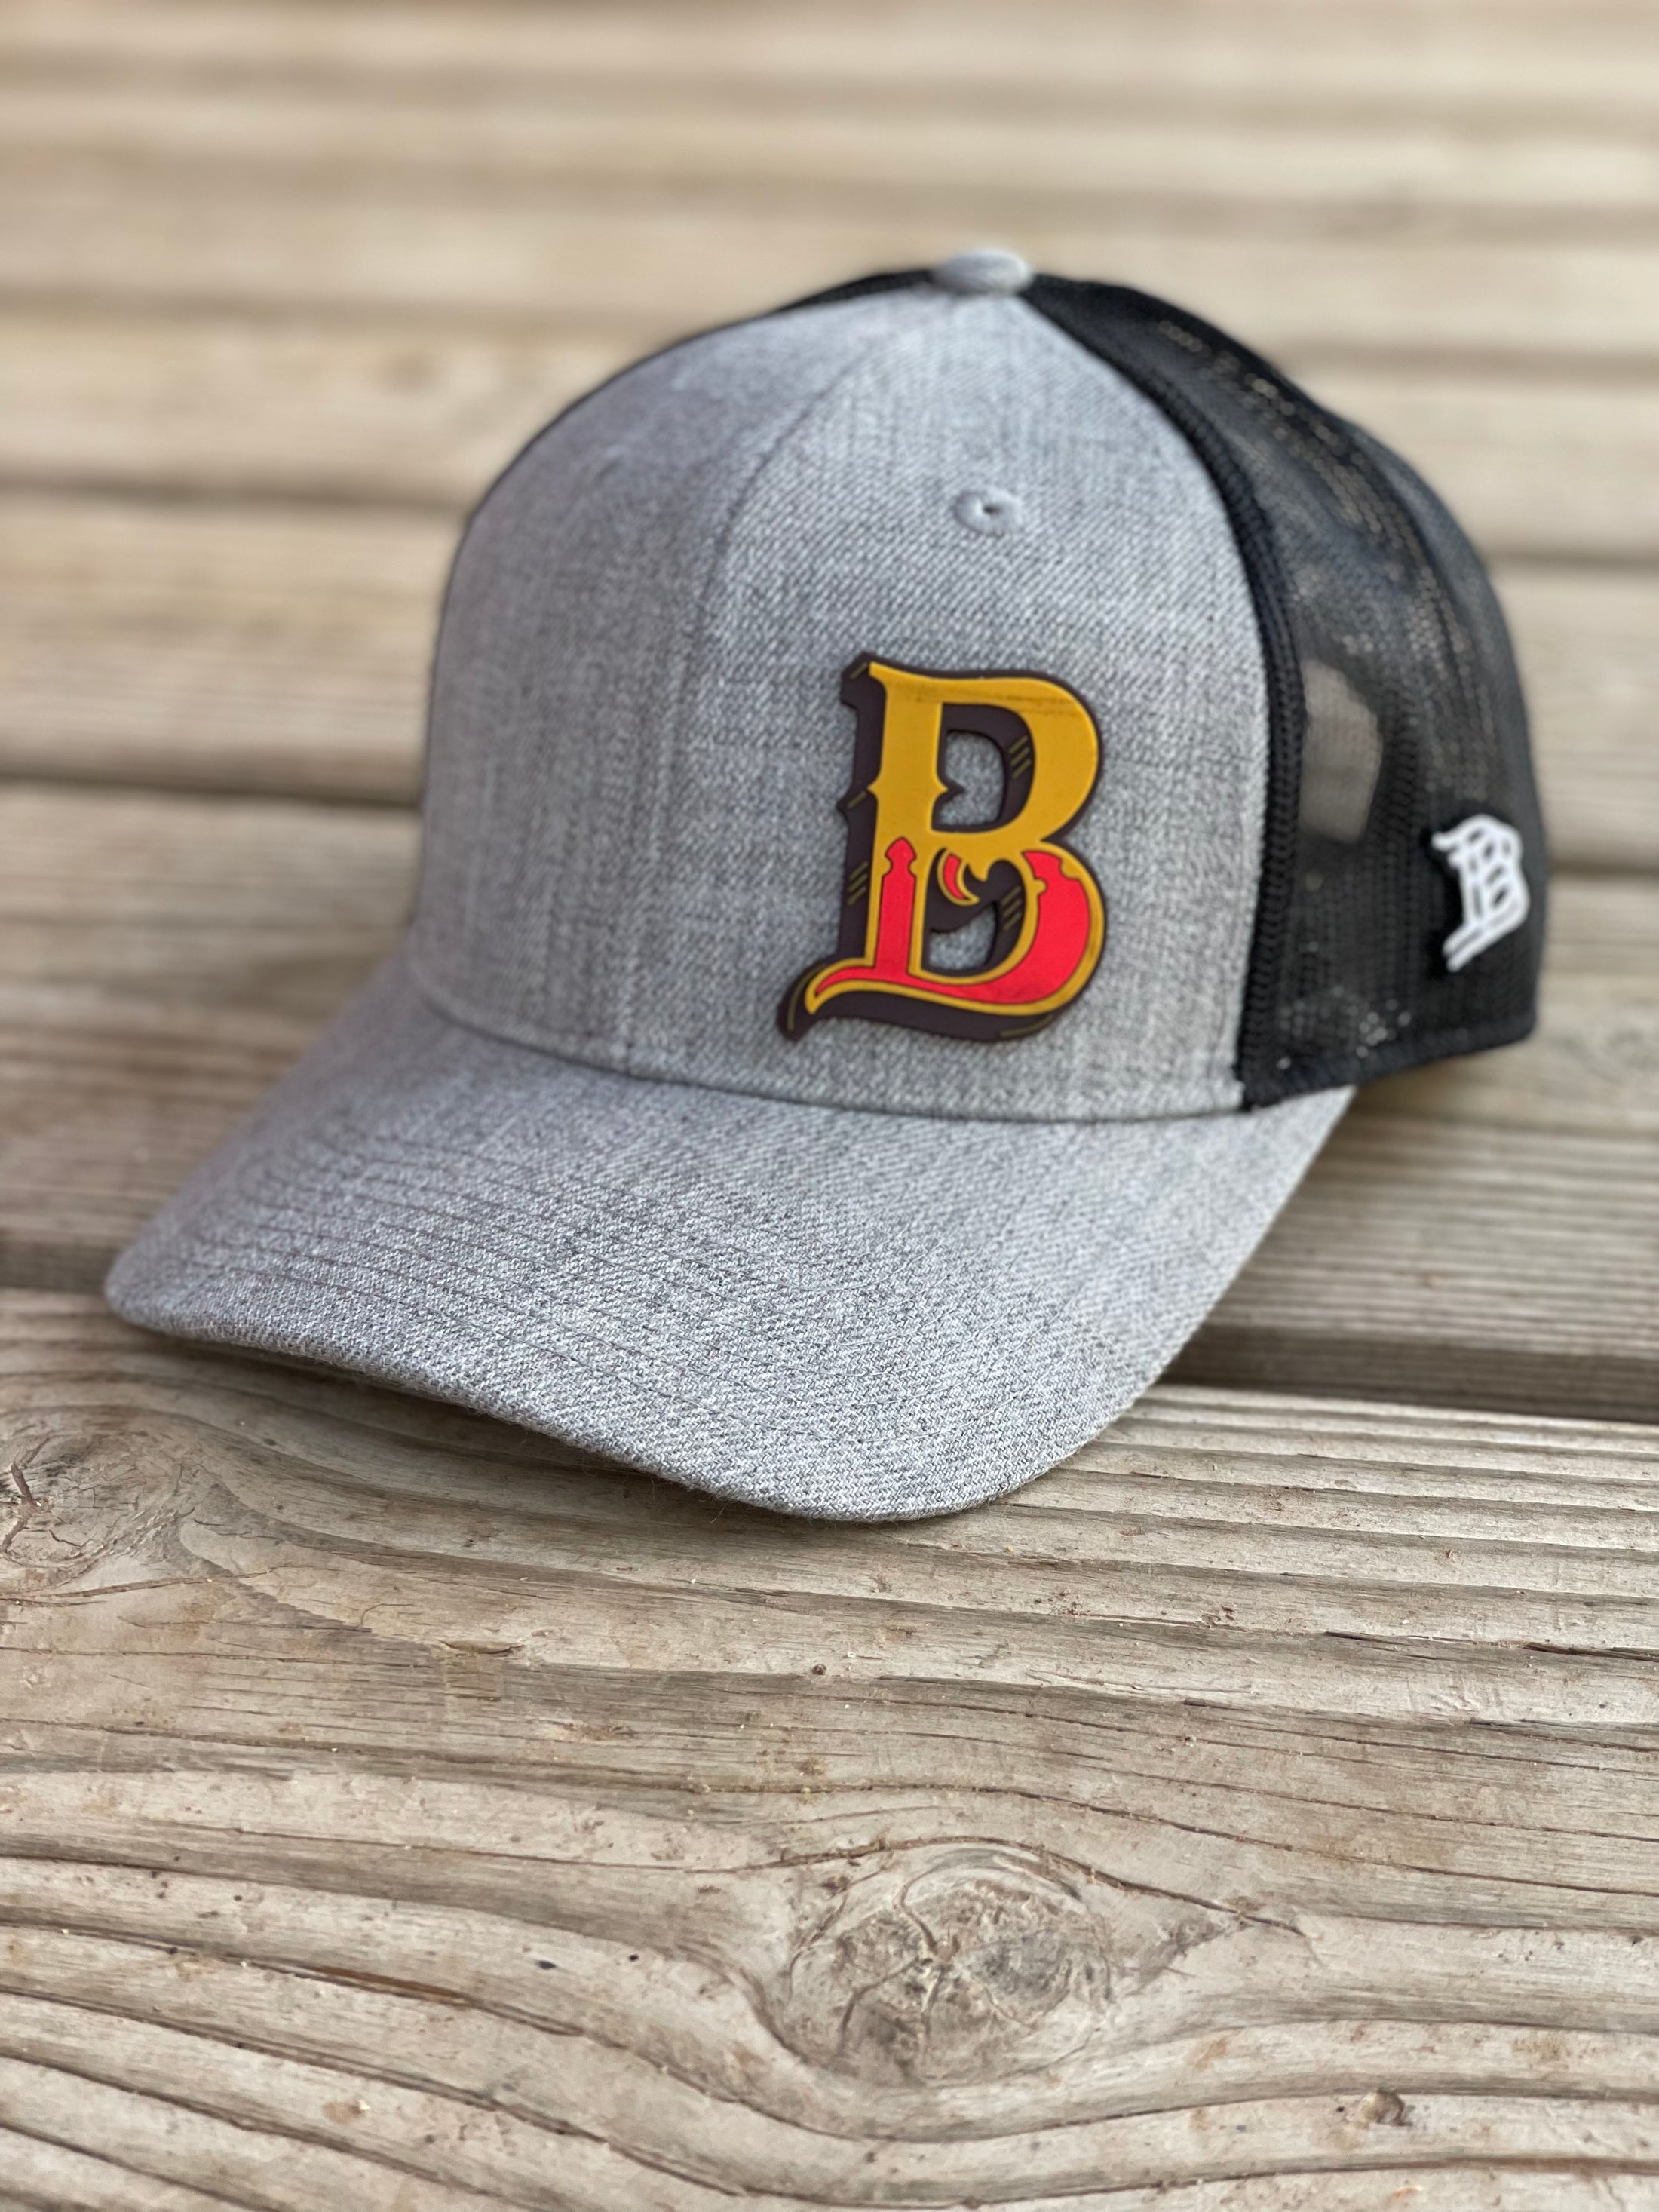 The Big B Curve Bill Hat